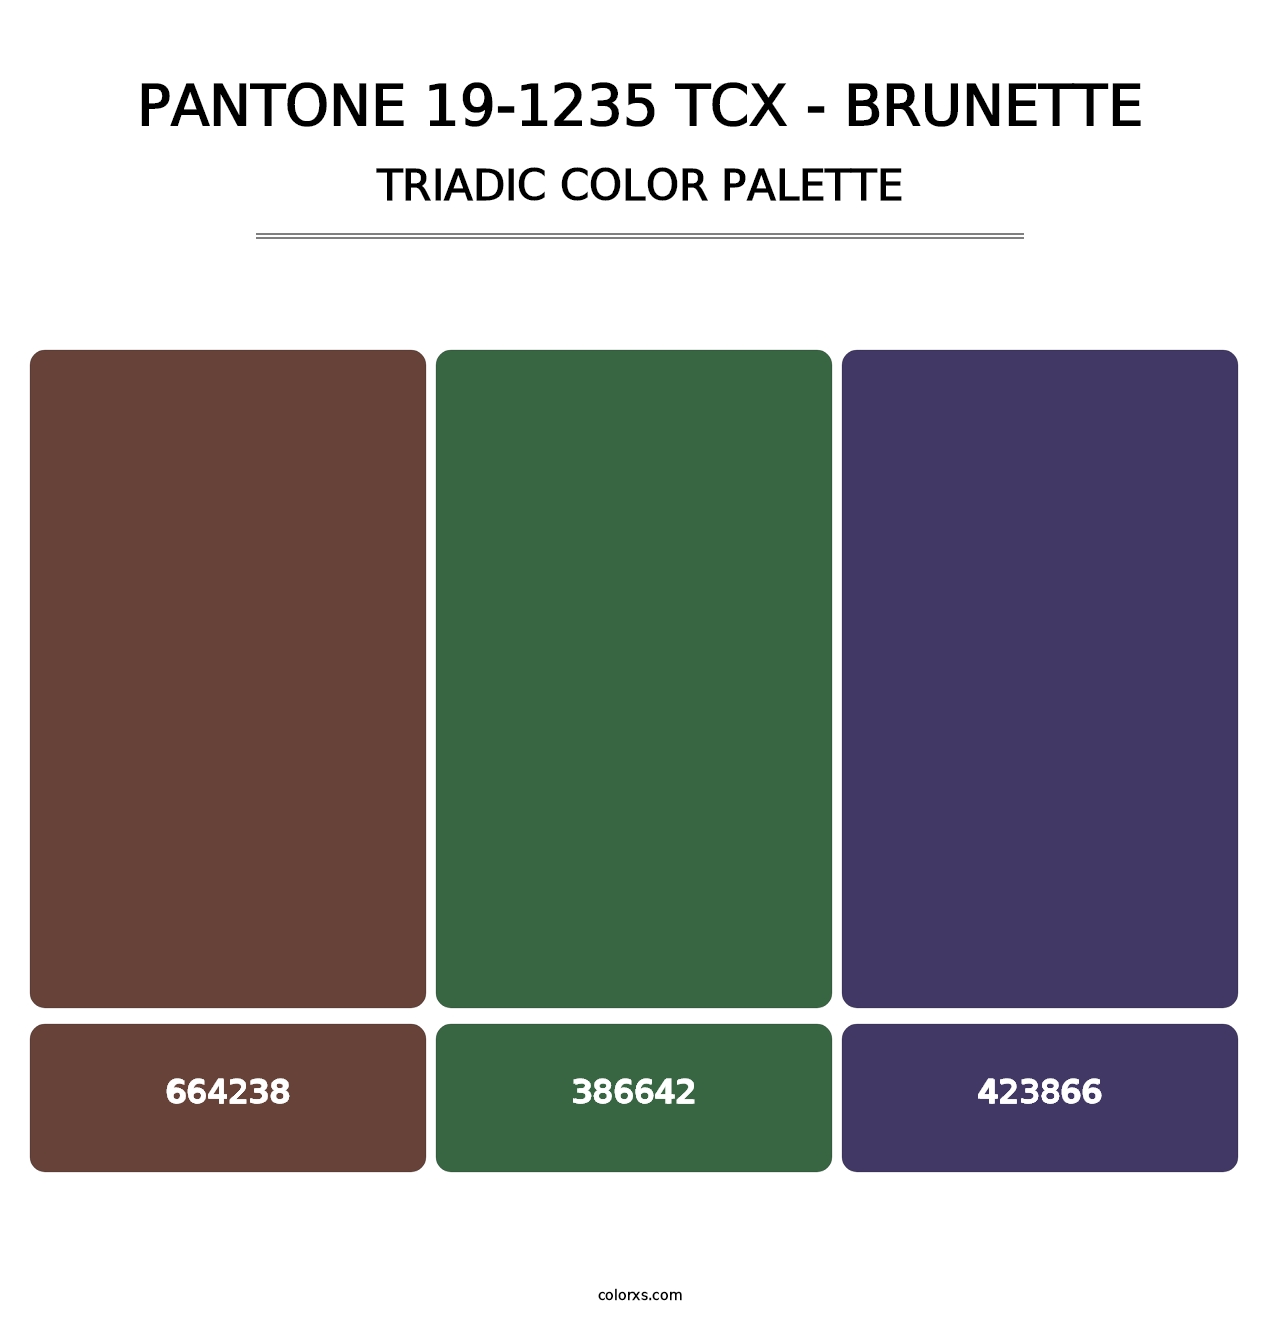 PANTONE 19-1235 TCX - Brunette - Triadic Color Palette